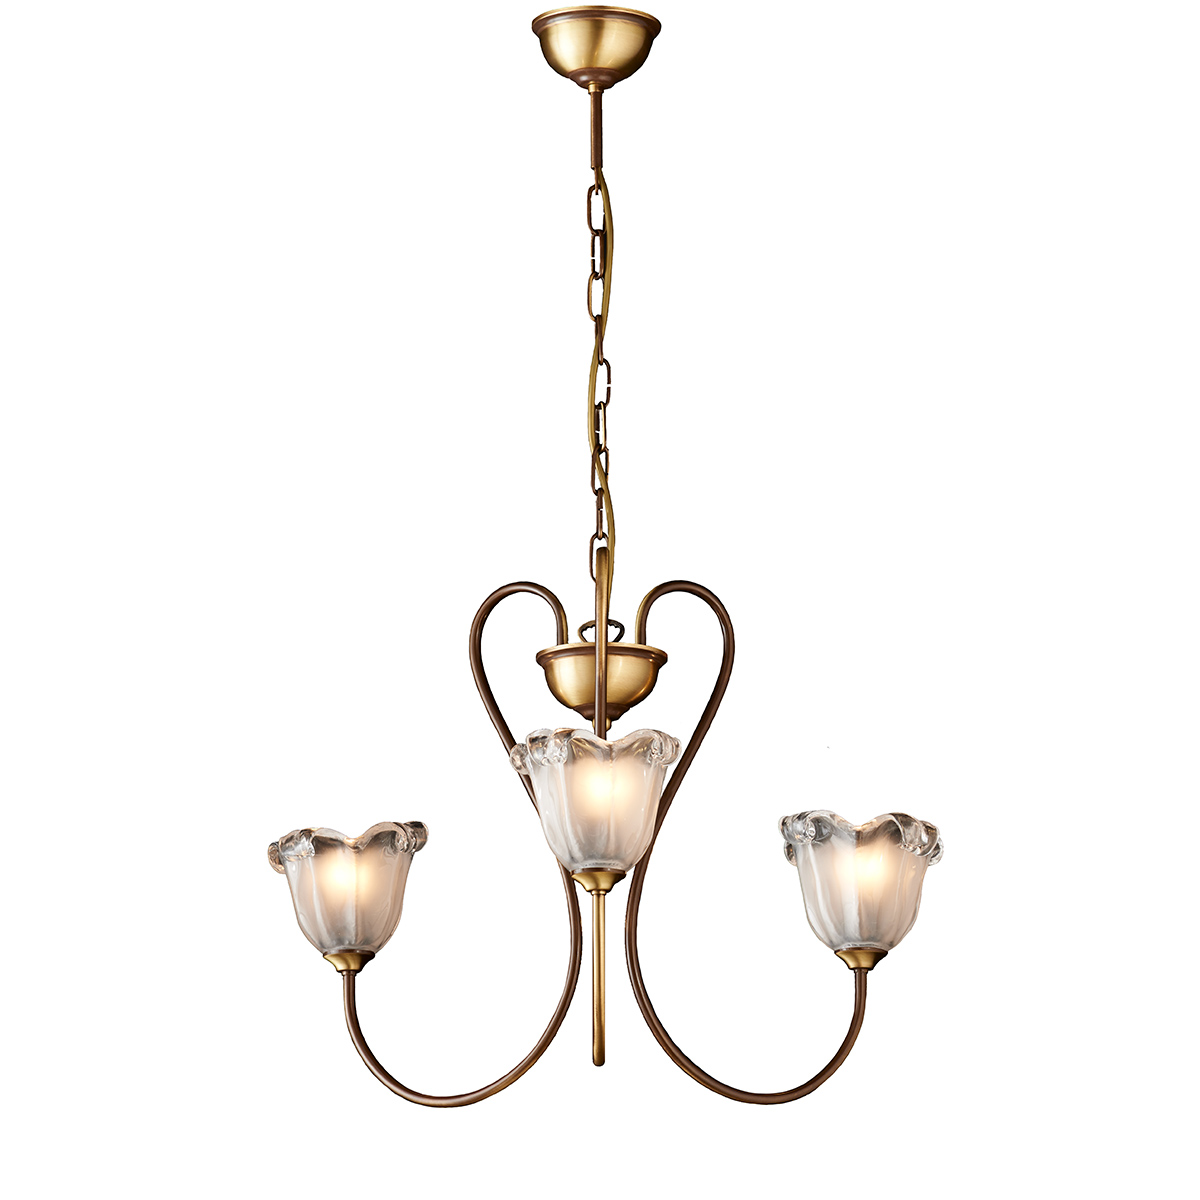 Κλασικό φωτιστικό με κρύσταλλα Μουράνο ΝΑΞΟΣ-1 classic chandelier with Murano crystals